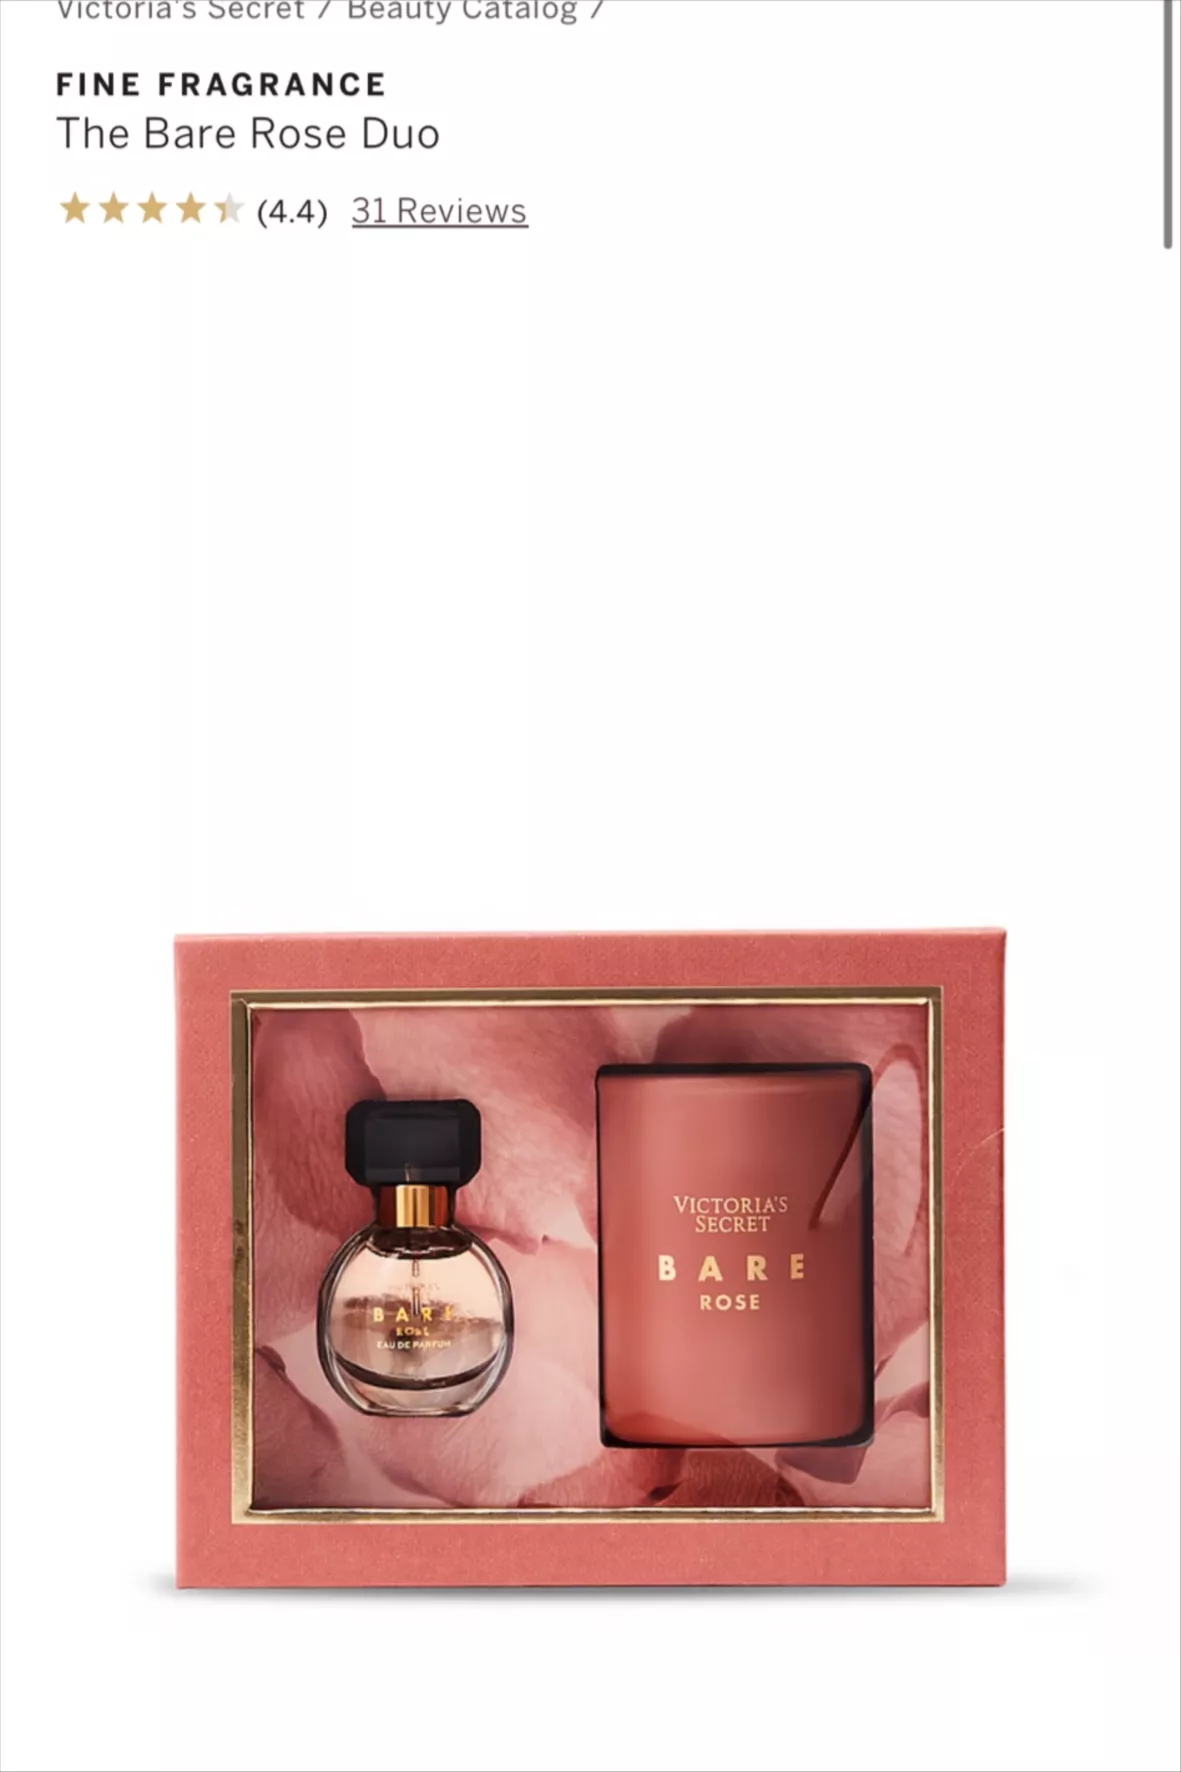 Buy Victoria's Secret Bare Eau de Parfum 2 Piece Fragrance Gift